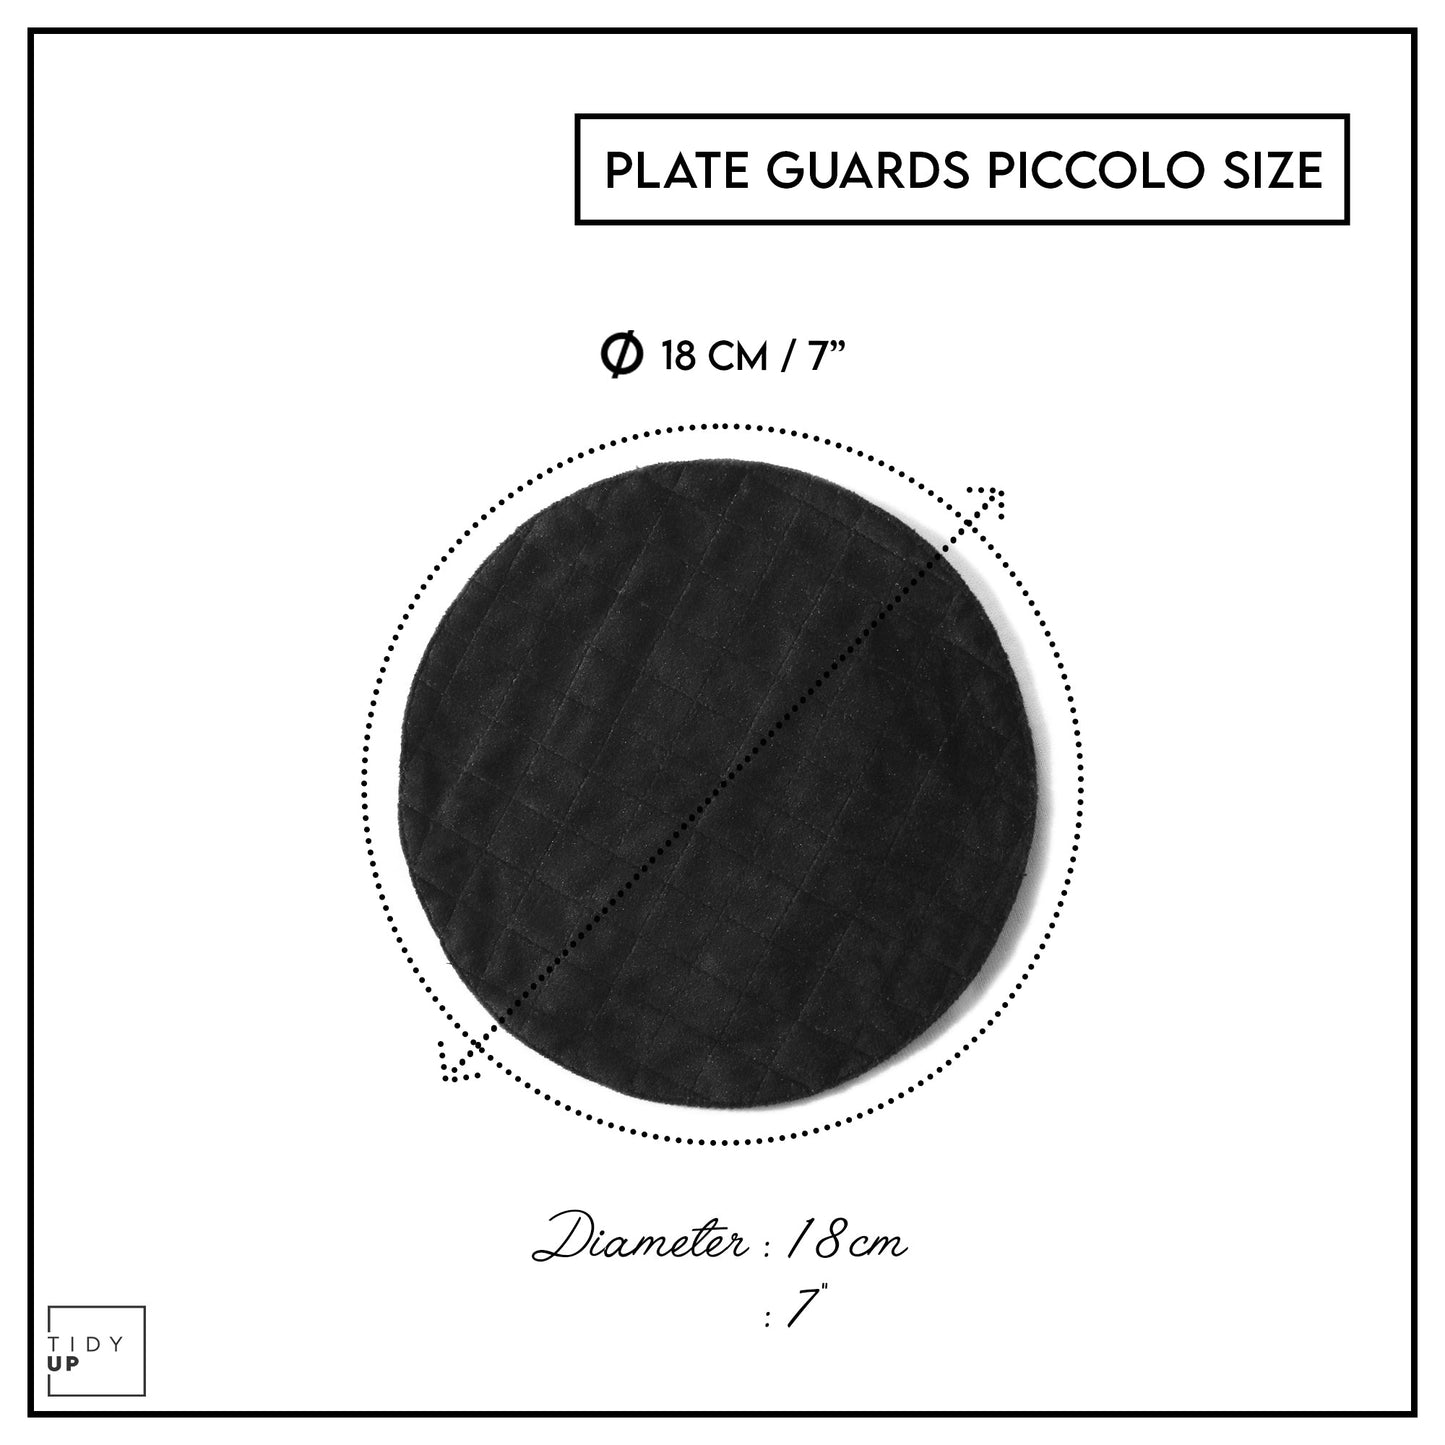 Platemate Guards Piccolo